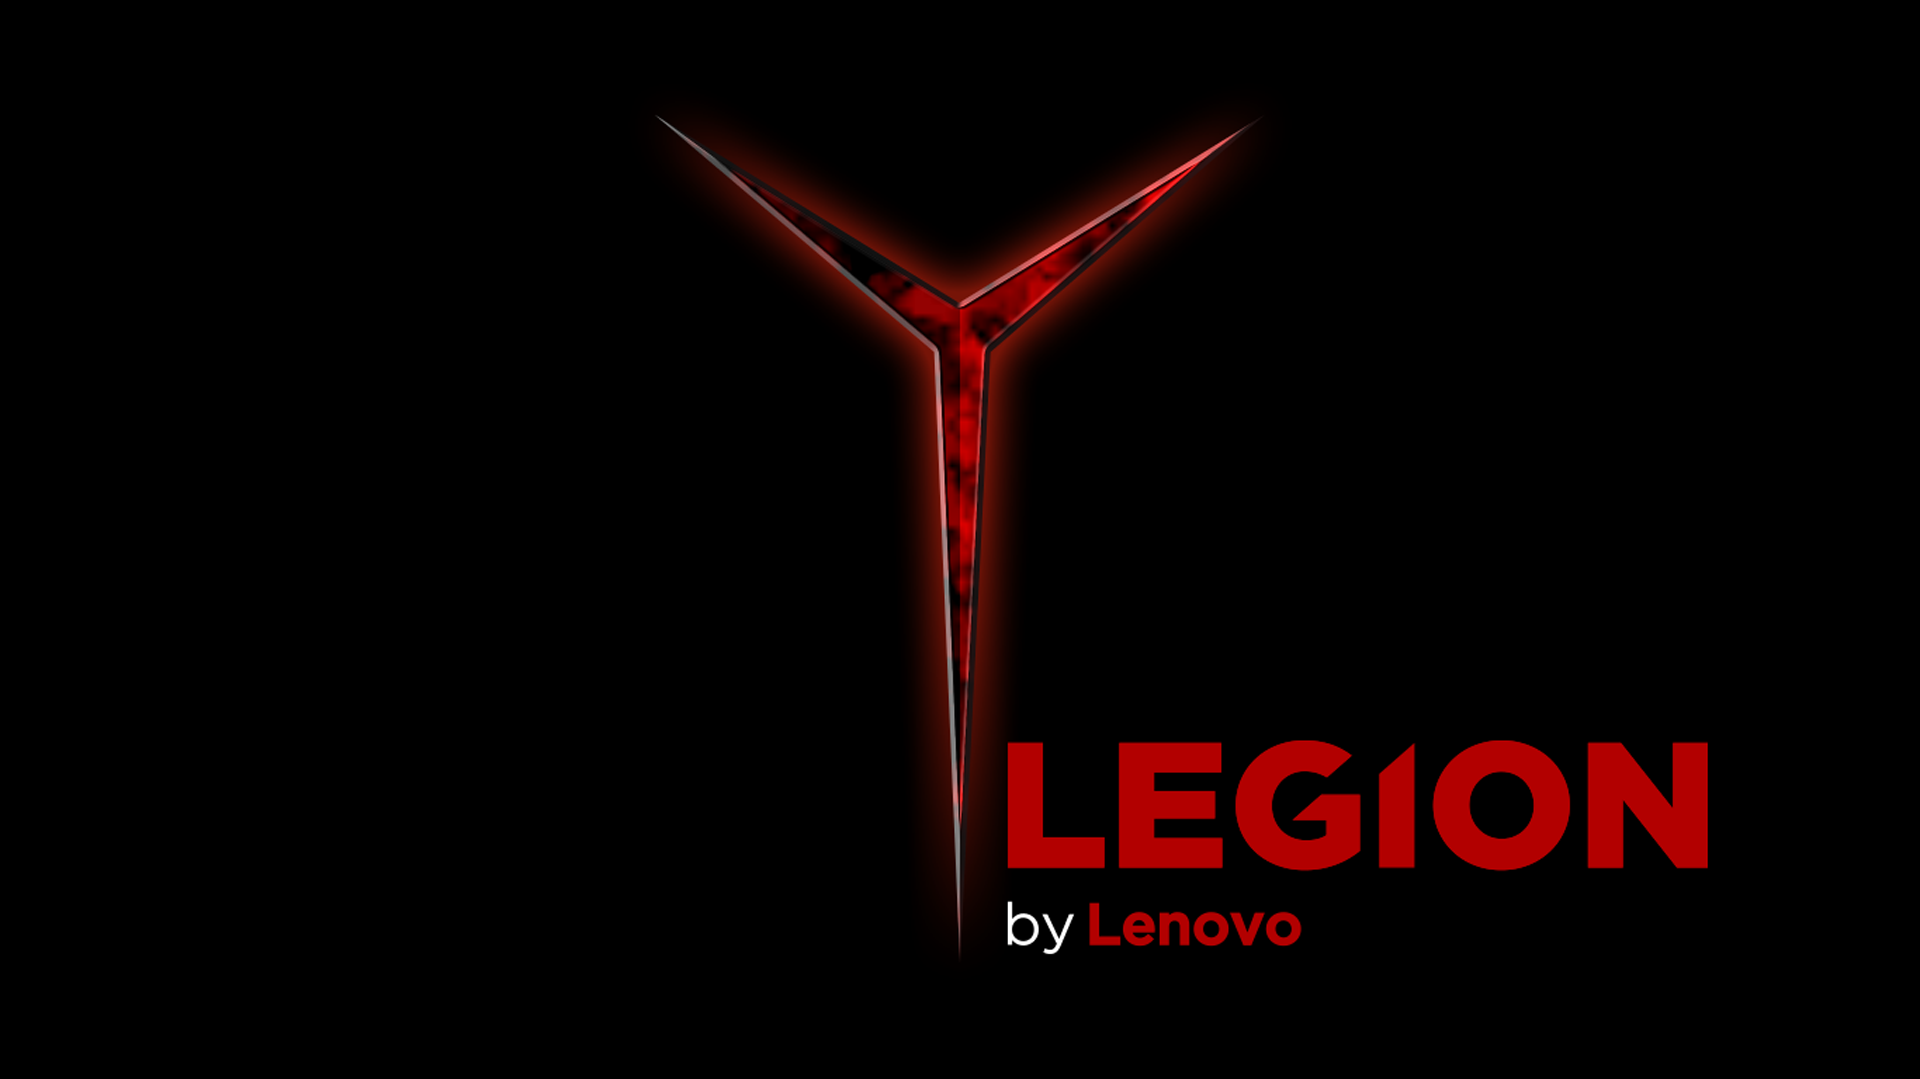 Lenovo Gaming - Nơi cung cấp cho bạn những sản phẩm chất lượng, đảm bảo đáp ứng được mọi yêu cầu của game thủ. Hãy để Lenovo Gaming mang đến trải nghiệm game vô cùng đặc sắc và tuyệt vời. Khám phá thế giới game đầy thú vị cùng Lenovo Gaming ngay hôm nay!